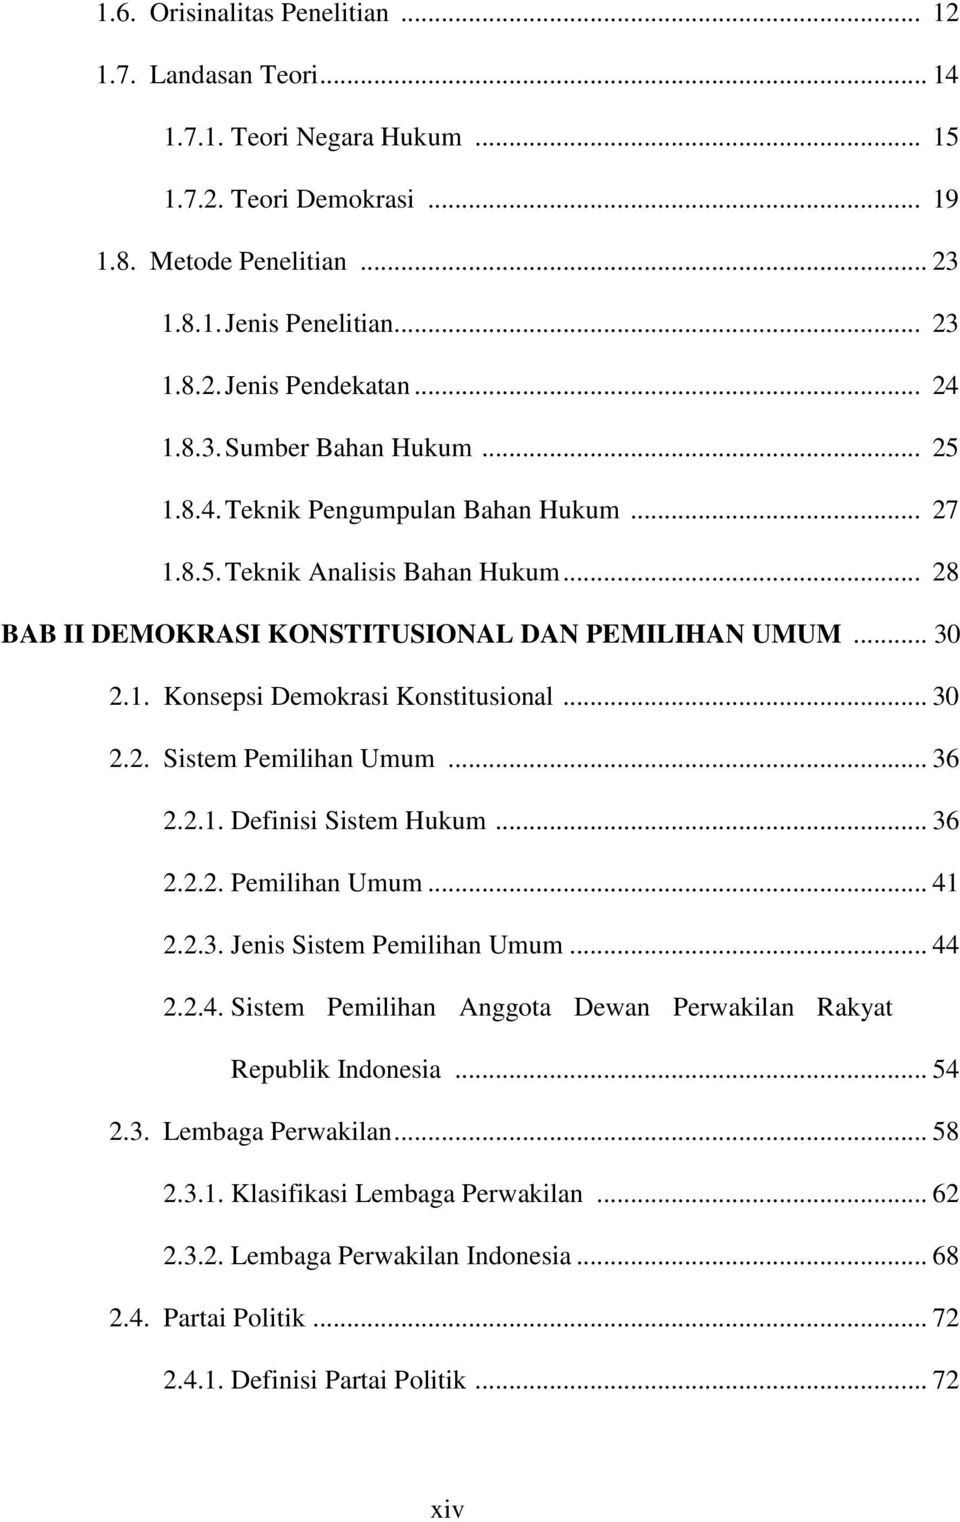 .. 30 2.2. Sistem Pemilihan Umum... 36 2.2.1. Definisi Sistem Hukum... 36 2.2.2. Pemilihan Umum... 41 2.2.3. Jenis Sistem Pemilihan Umum... 44 2.2.4. Sistem Pemilihan Anggota Dewan Perwakilan Rakyat Republik Indonesia.